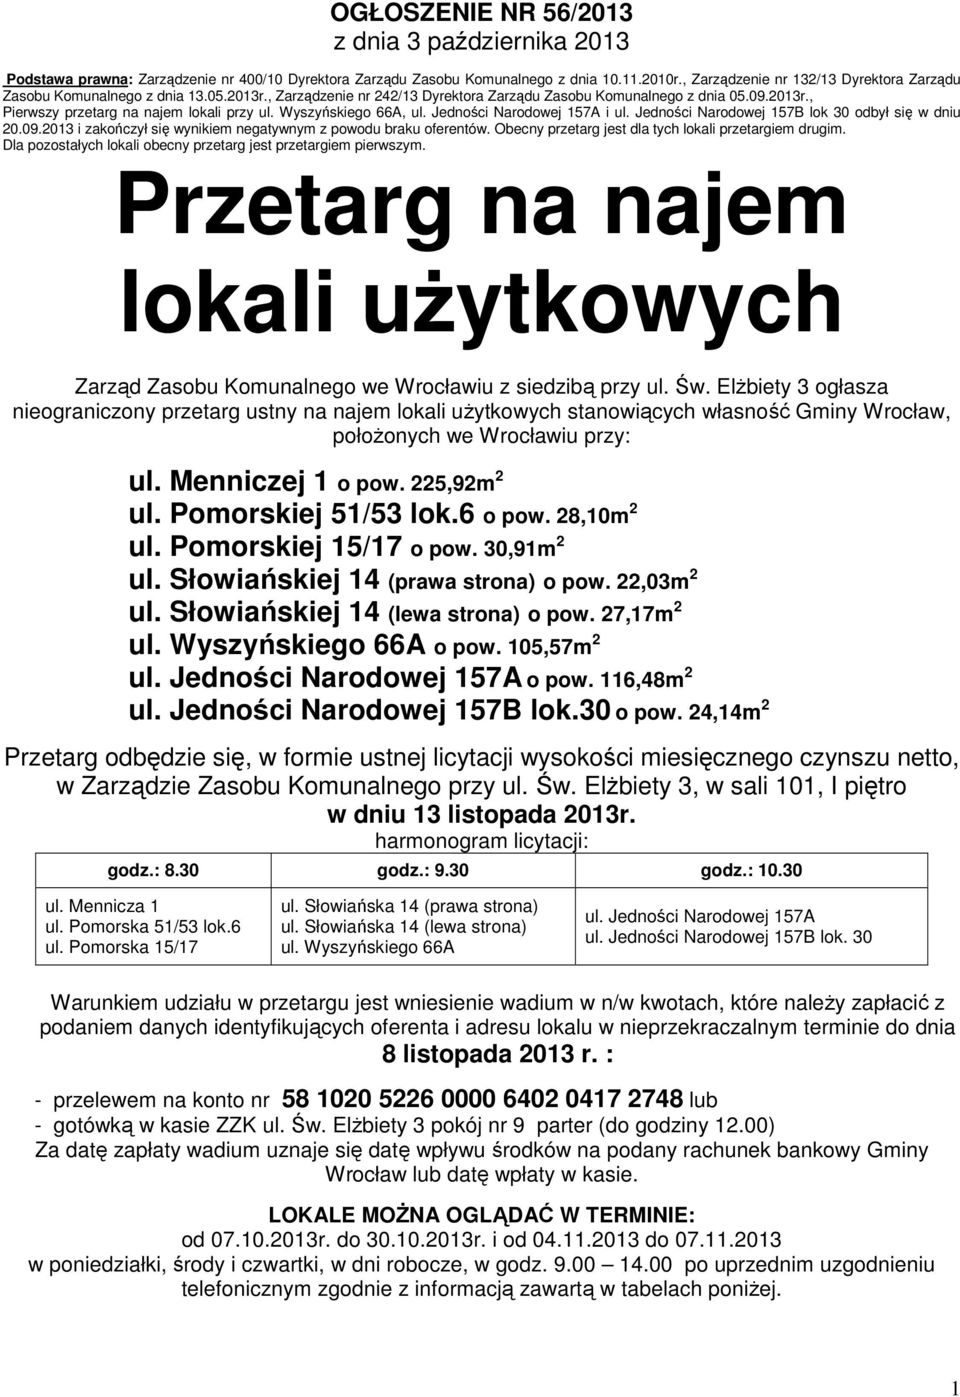 Wyszyńskiego 66A, ul. Jedności Narodowej 157A i ul. Jedności Narodowej 157B lok 30 odbył się w dniu 20.09.2013 i zakończył się wynikiem negatywnym z powodu braku oferentów.